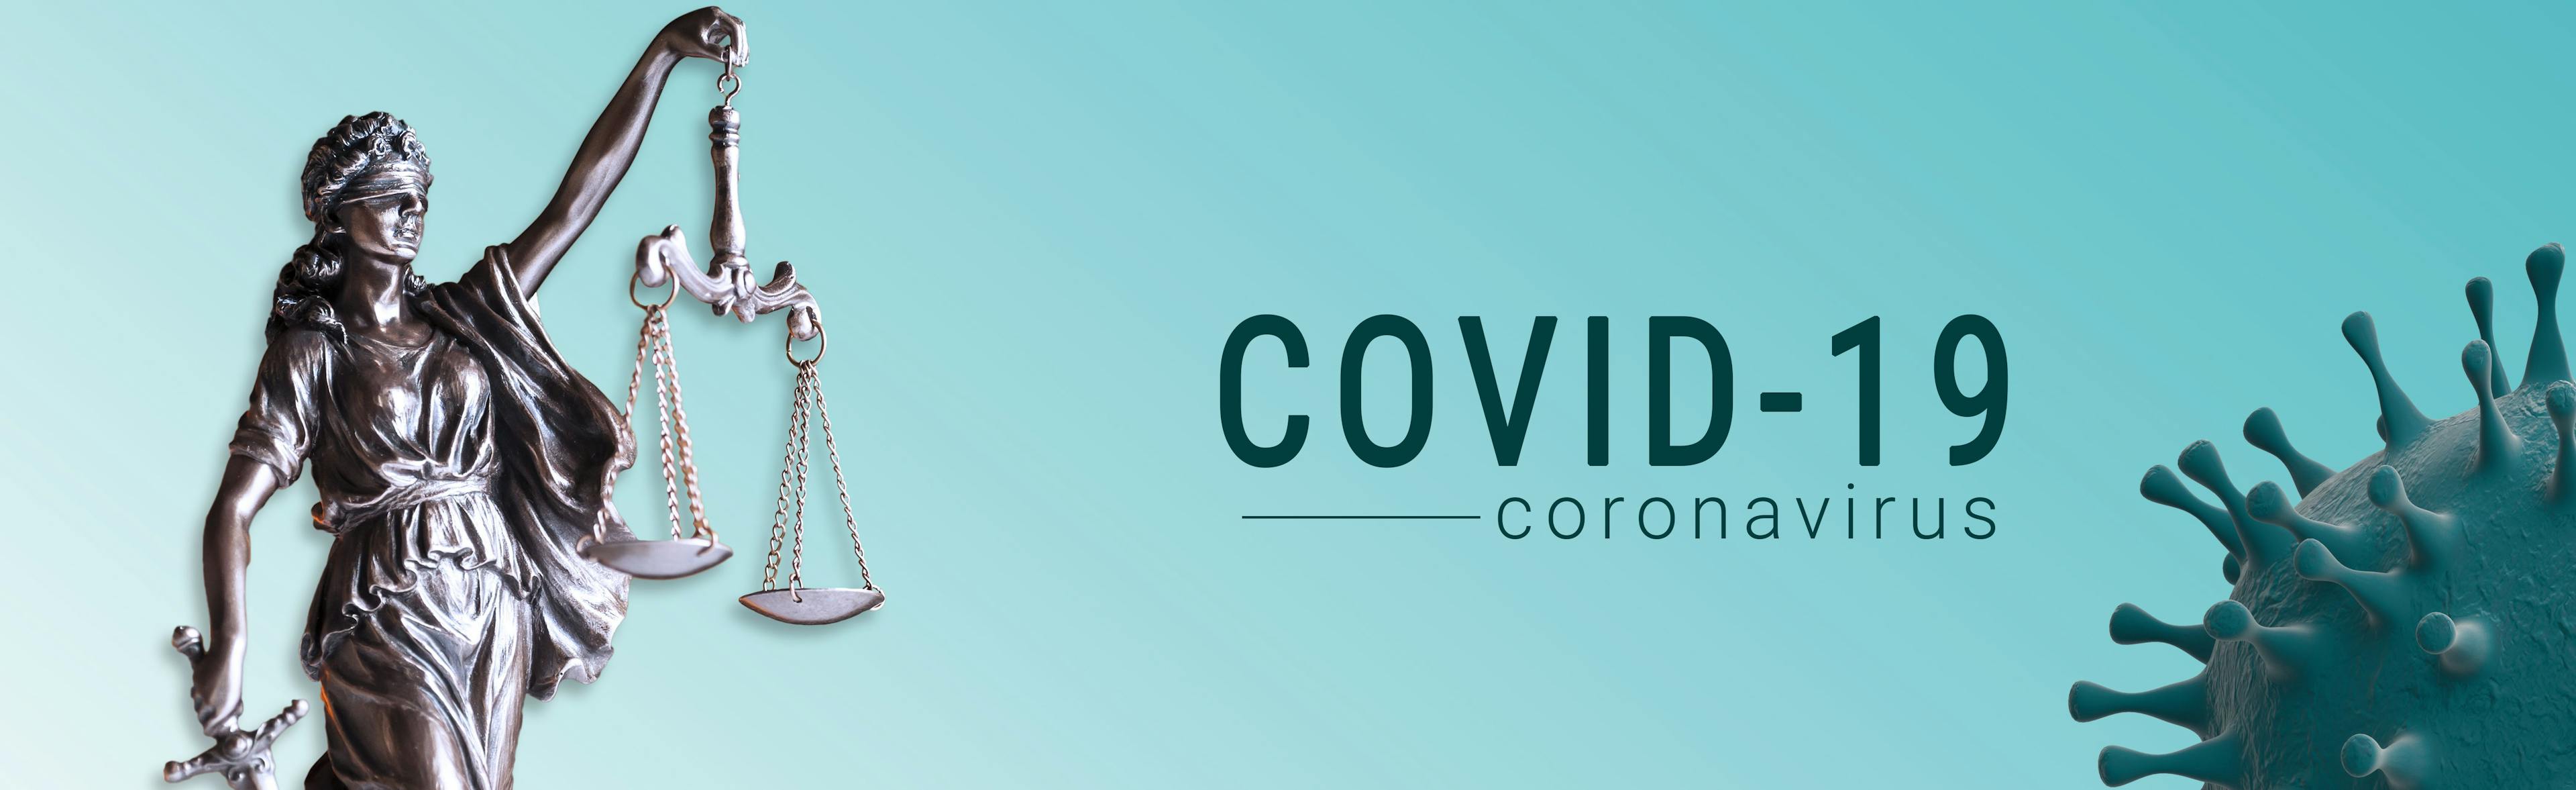 COVID-19 law